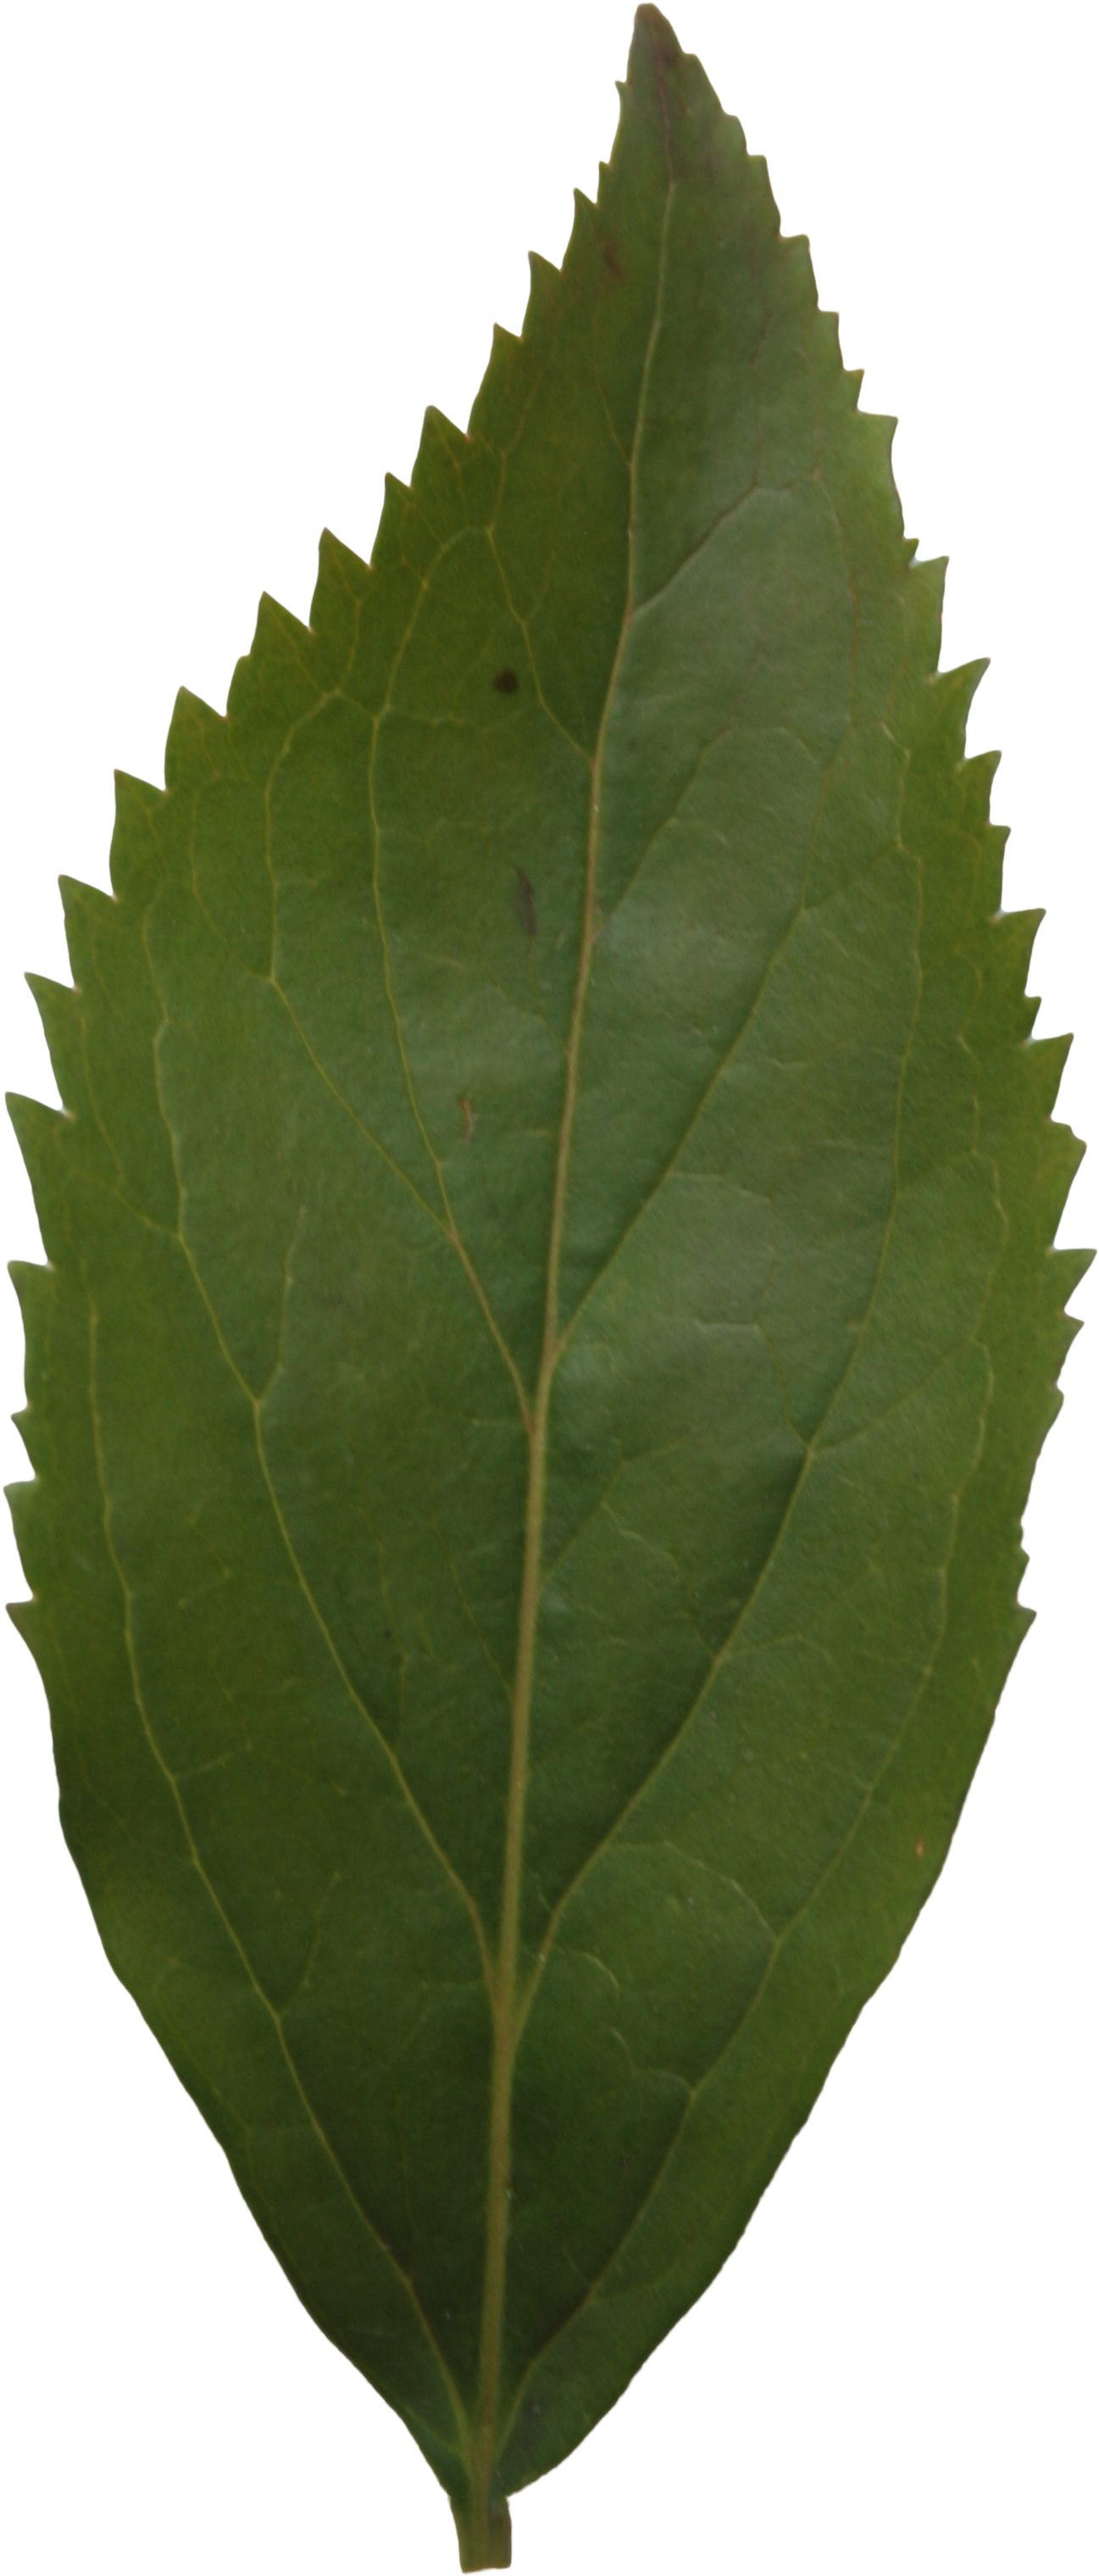 Ash Leaf Texture - Leaf (2304x3456), Png Download